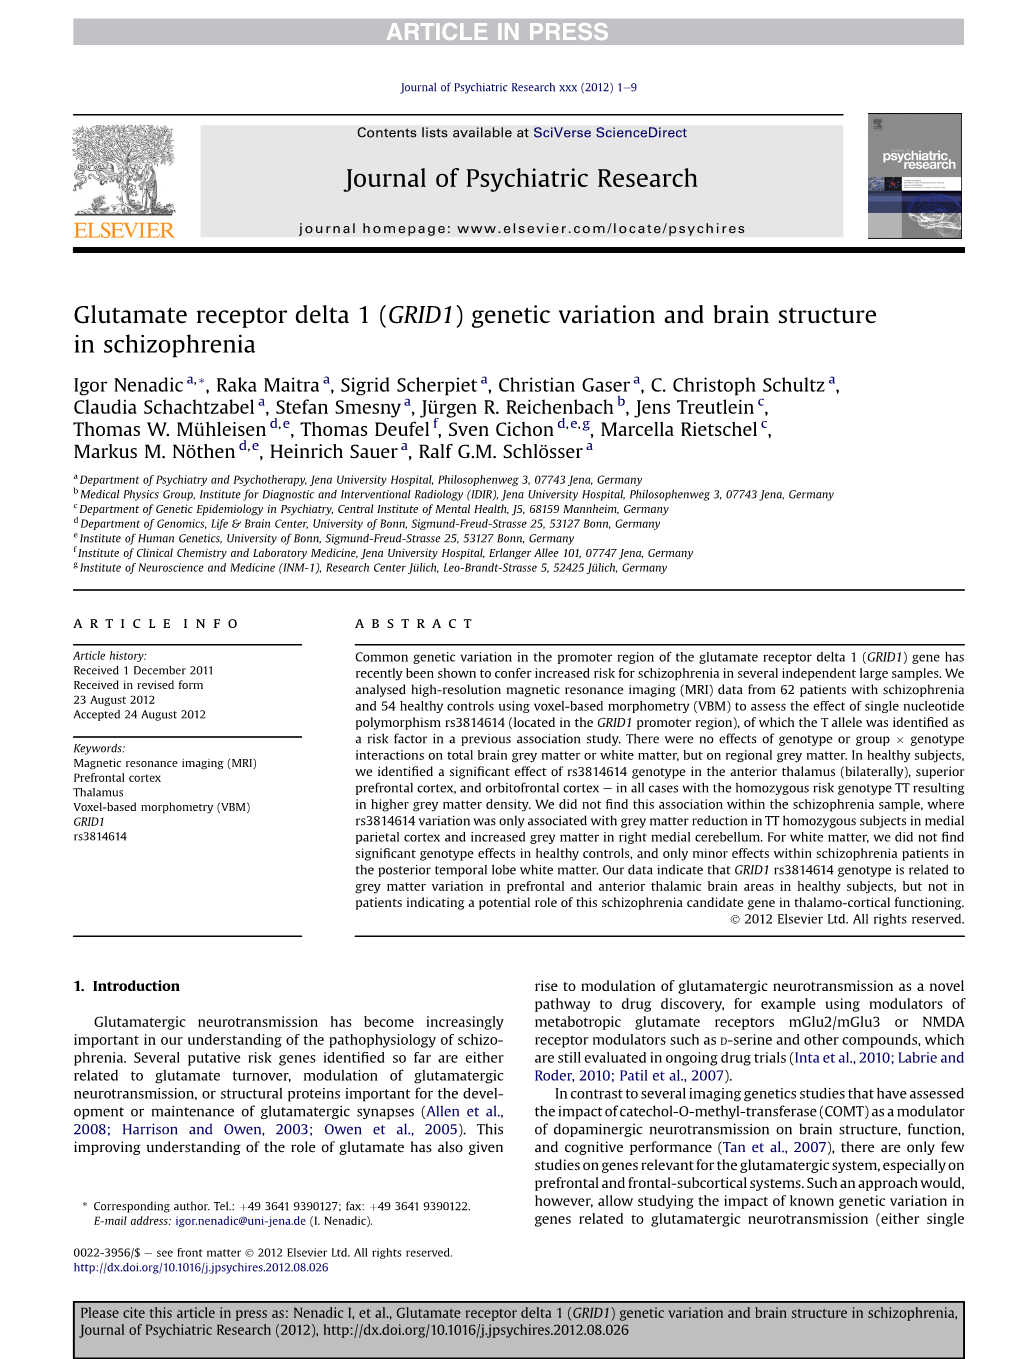 Glutamate Receptor Delta 1 (GRID1) Genetic Variation and Brain Structure in Schizophrenia